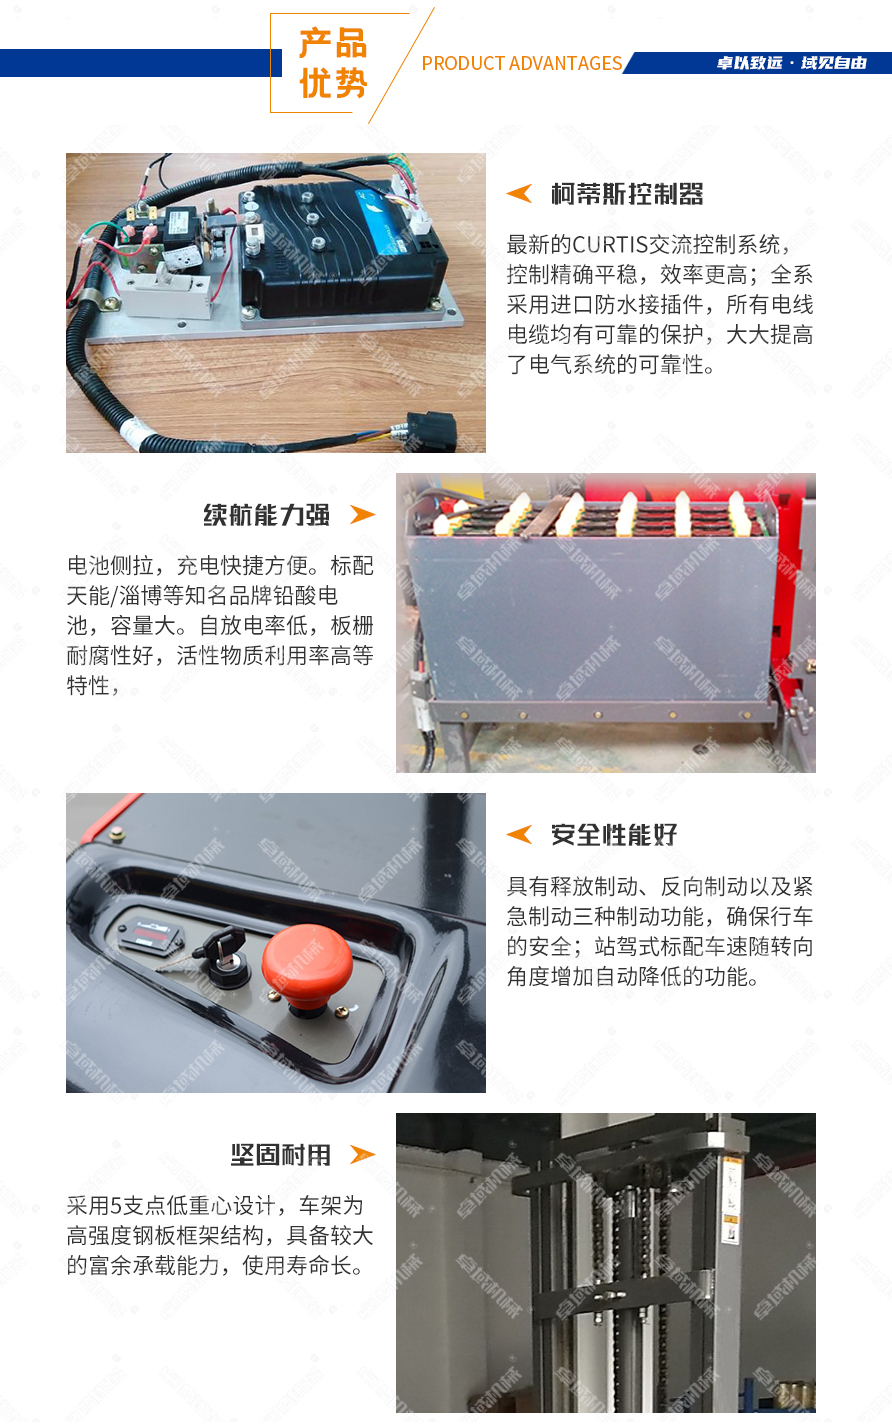 前移式电动堆高车(带踏板门架前移)产品优势